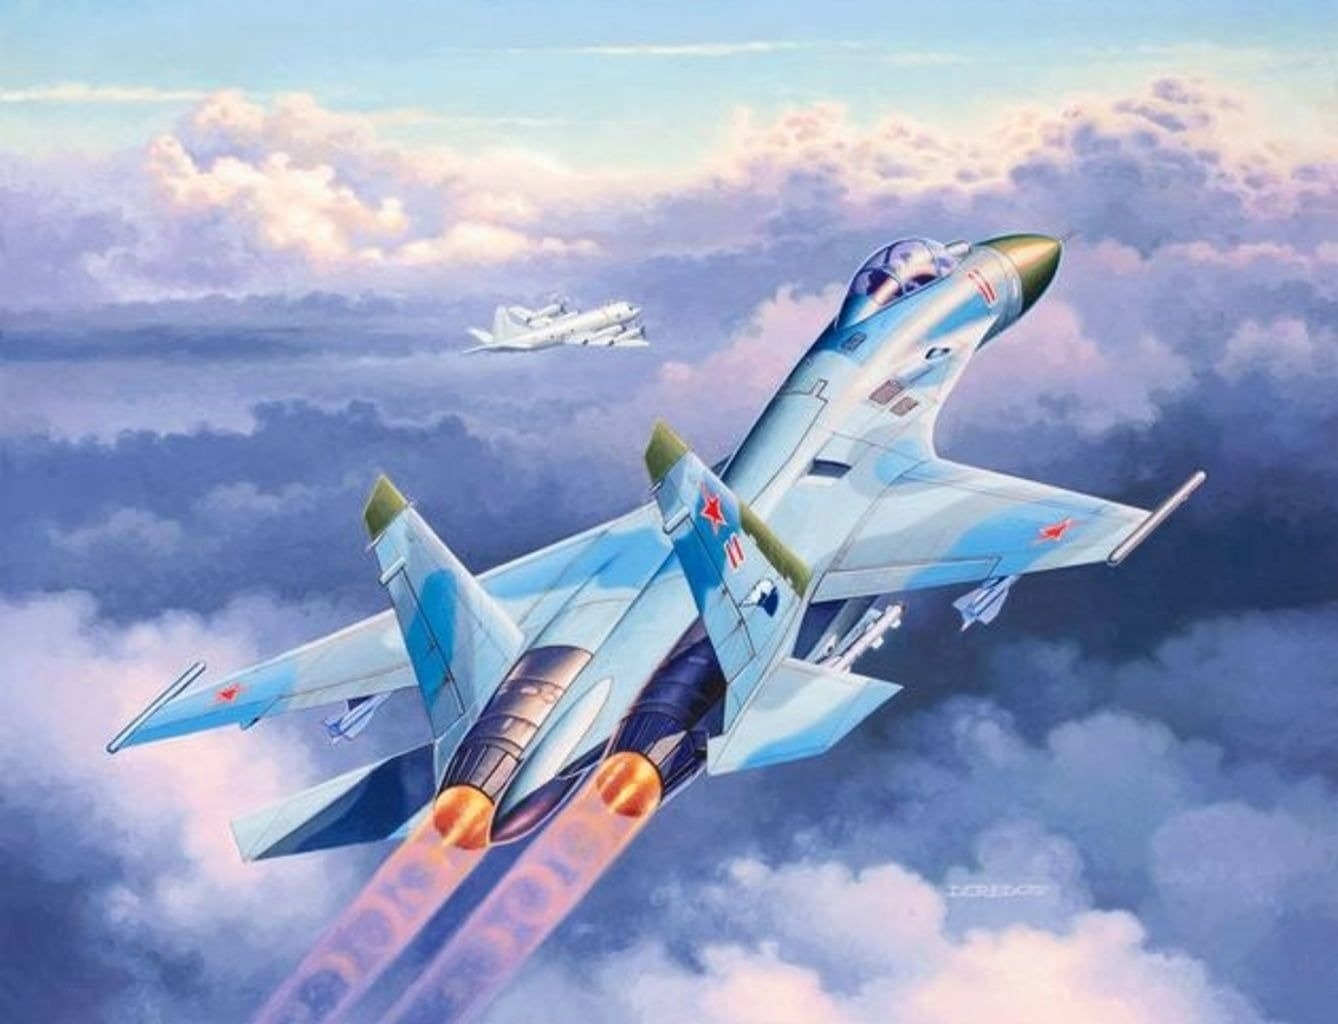 5 بهترین هواپیمای جنگنده شوروی در دوران جنگ سرد که خلبانان آمریکایی از آن می ترسیدند (+ عکس)